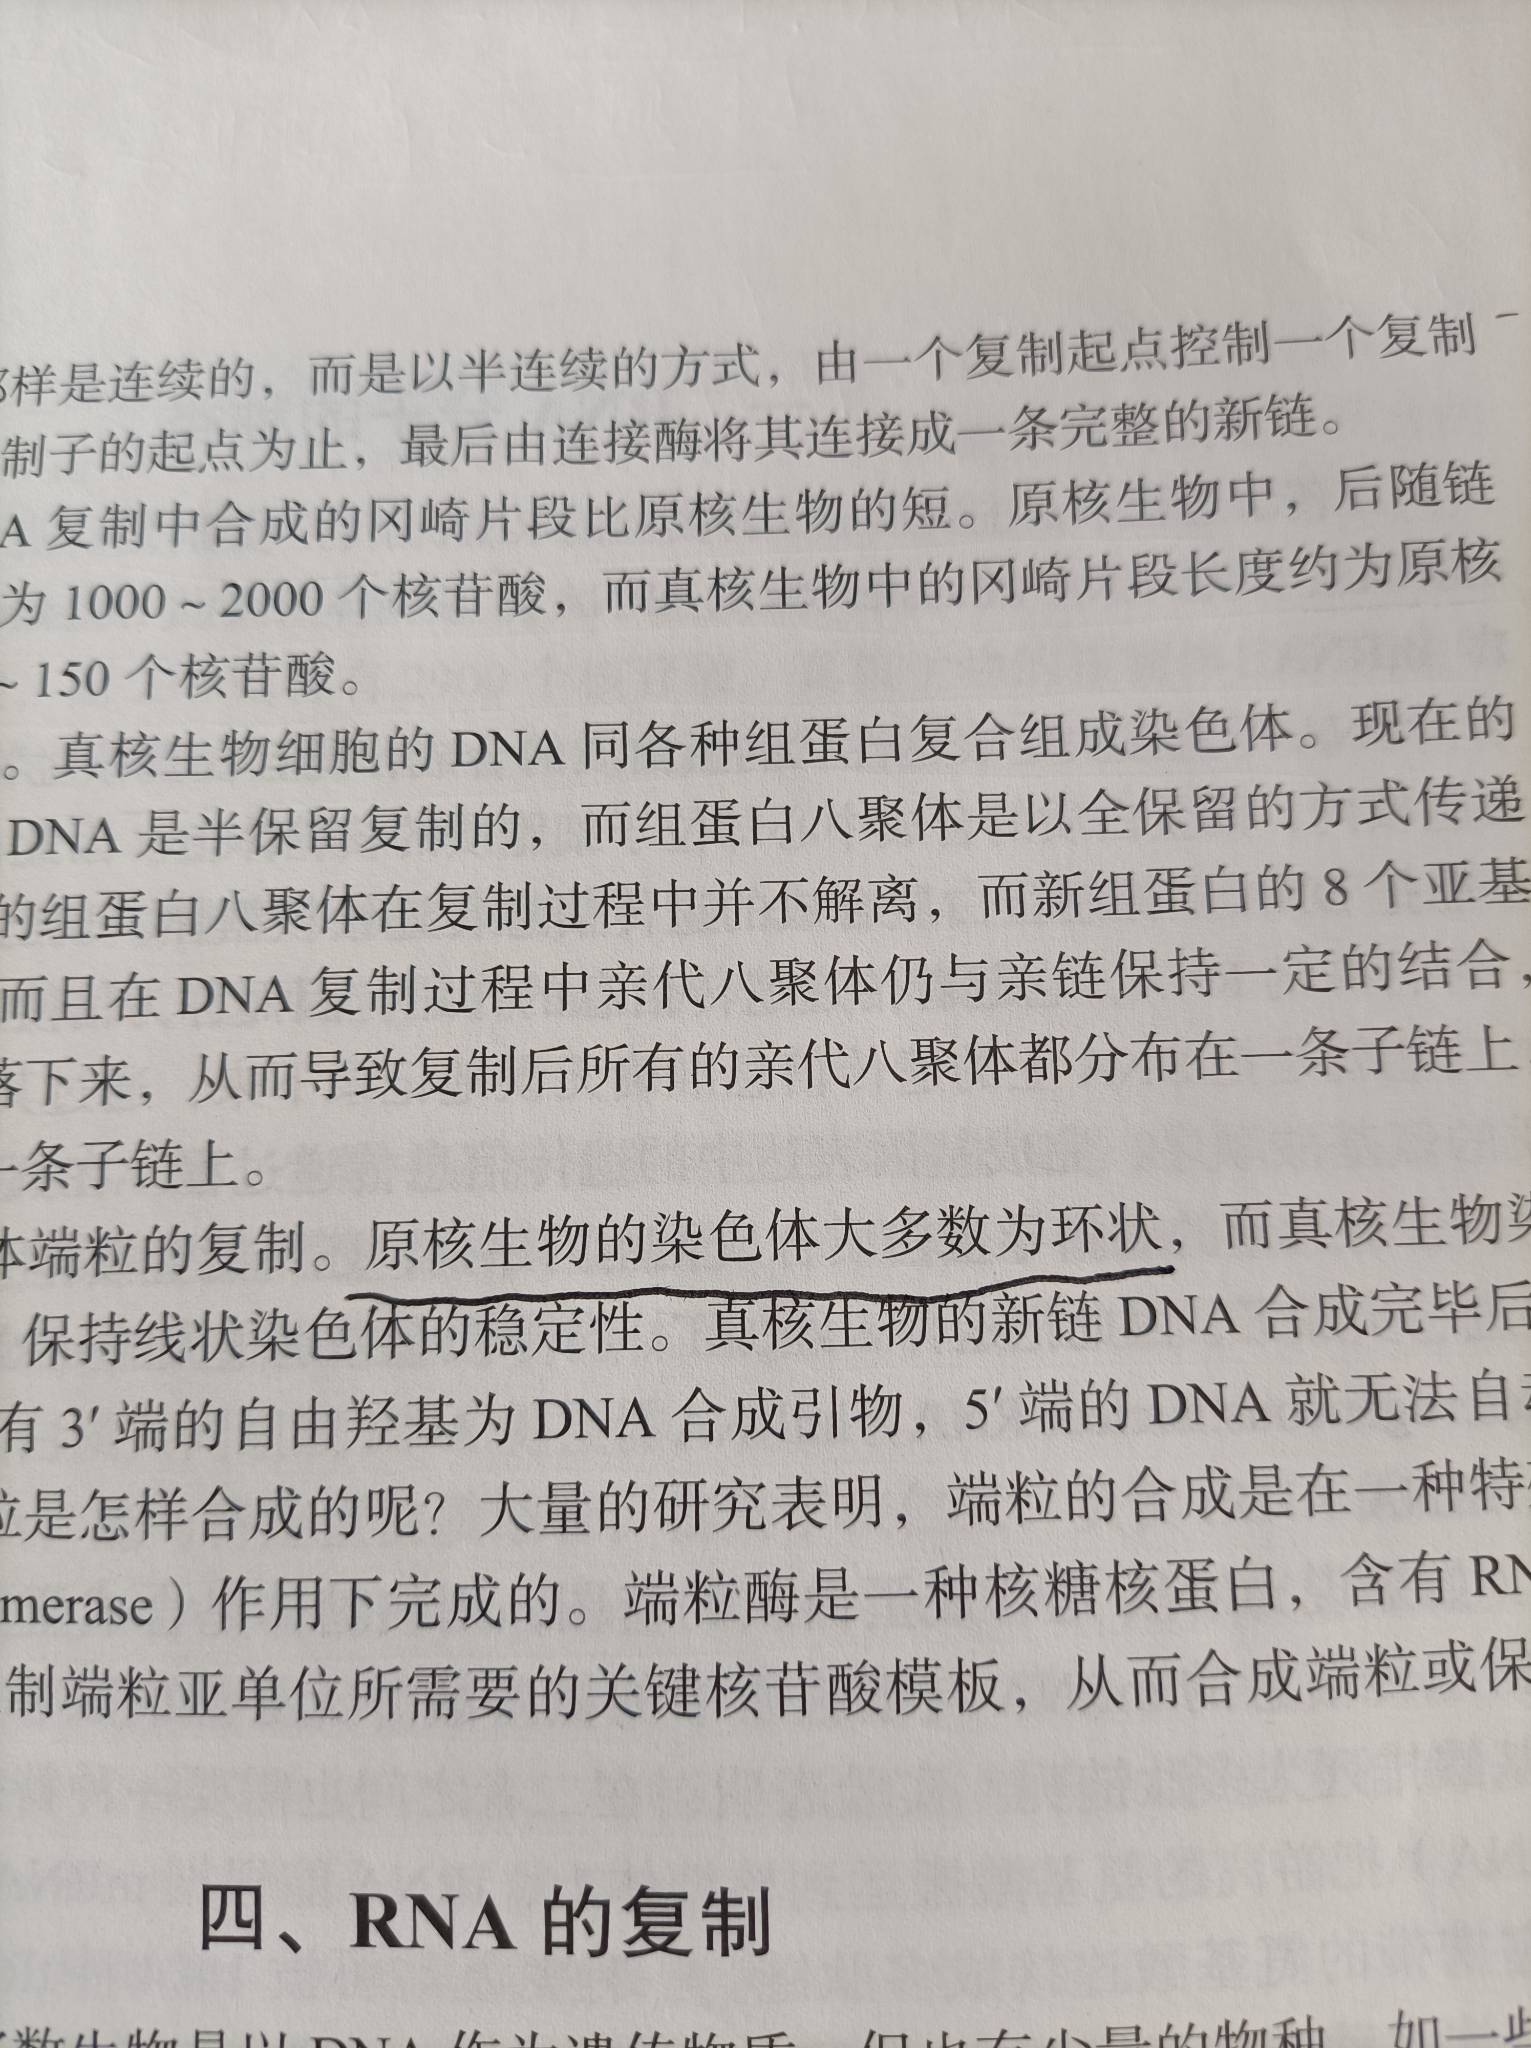 书上说：原核生物的染色体大多数为环状，可是原核生物不是没有染色体吗，为什么还说原核生物的染色体？？？求教